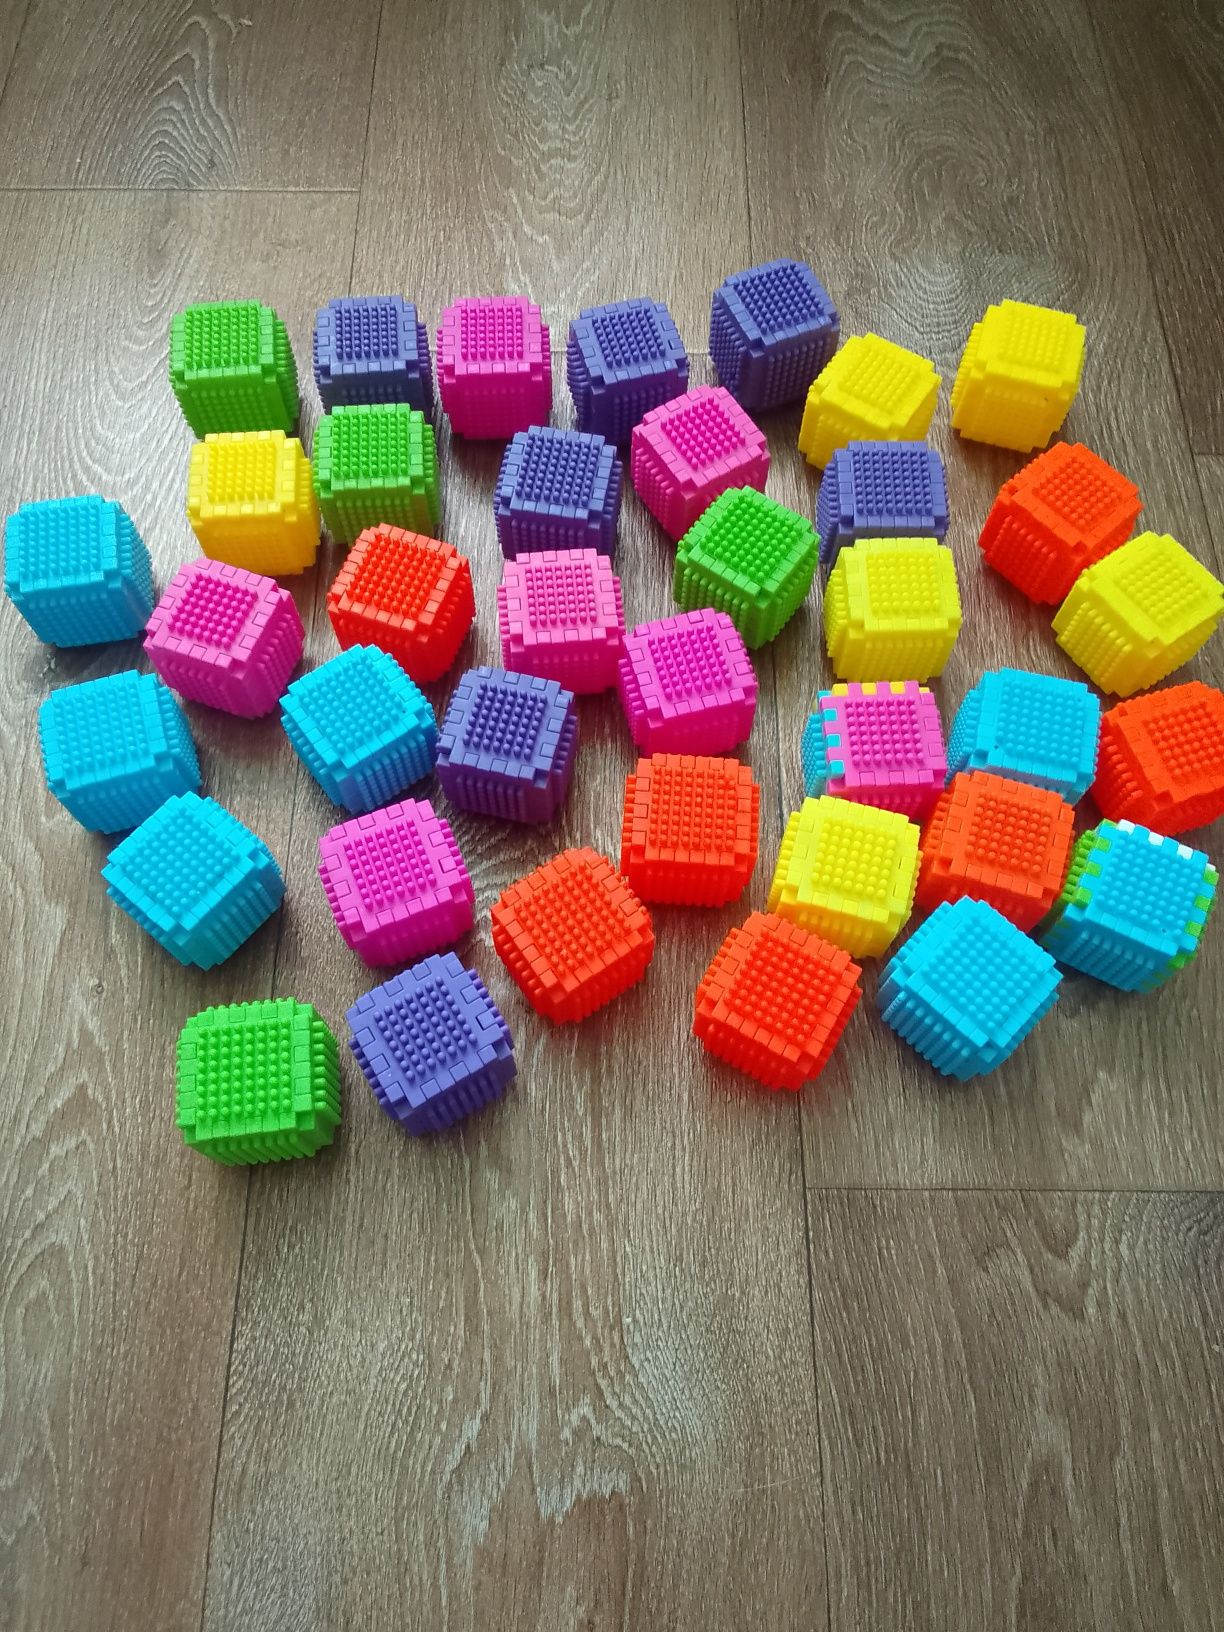 Кубики конструктор в нормальном состоянии за всё  3500тенге